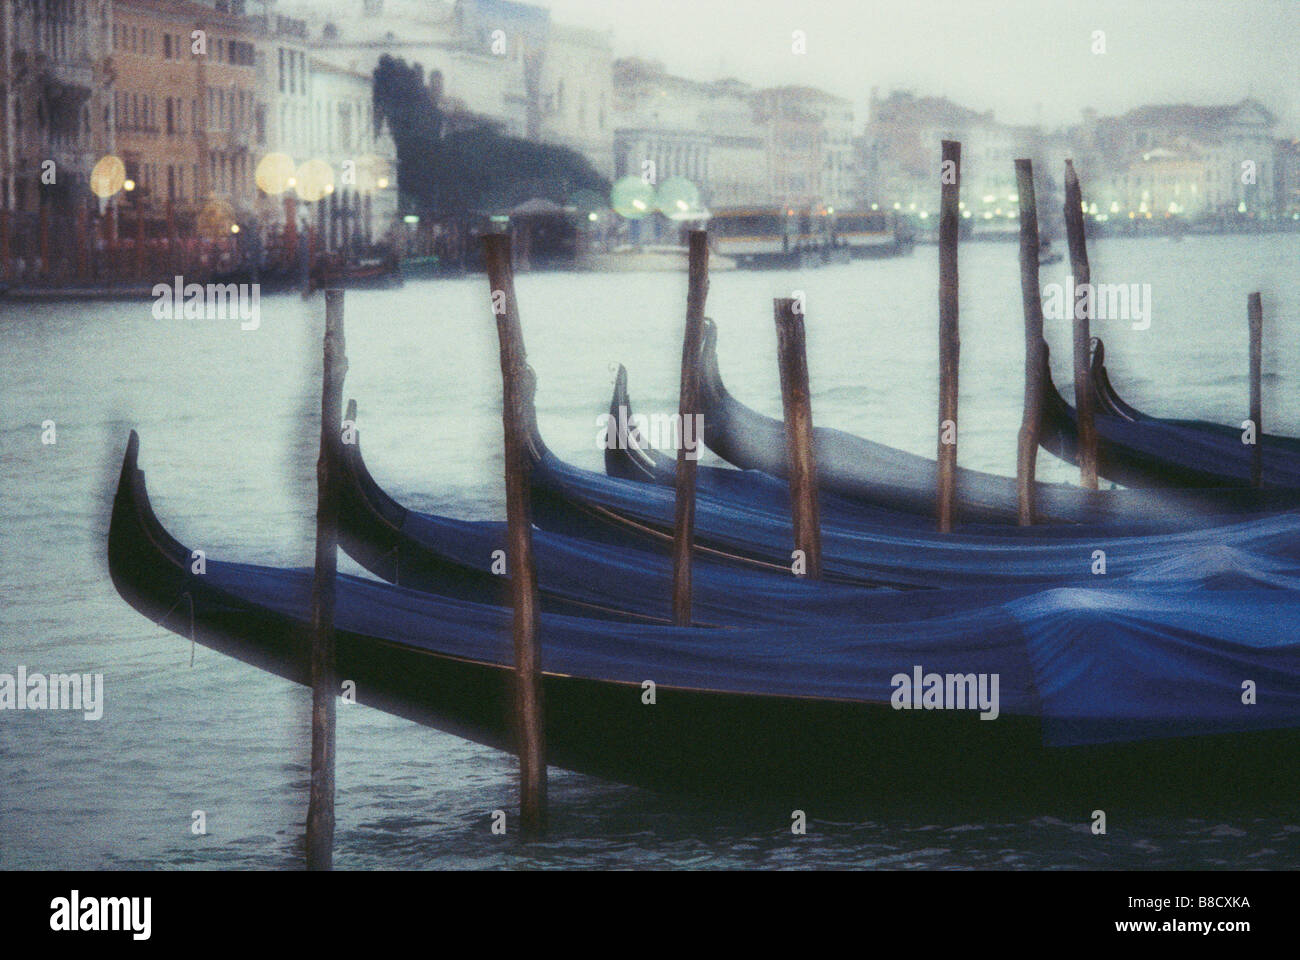 FV2129, David Nunuk; Gondolas Venice, Italy Stock Photo